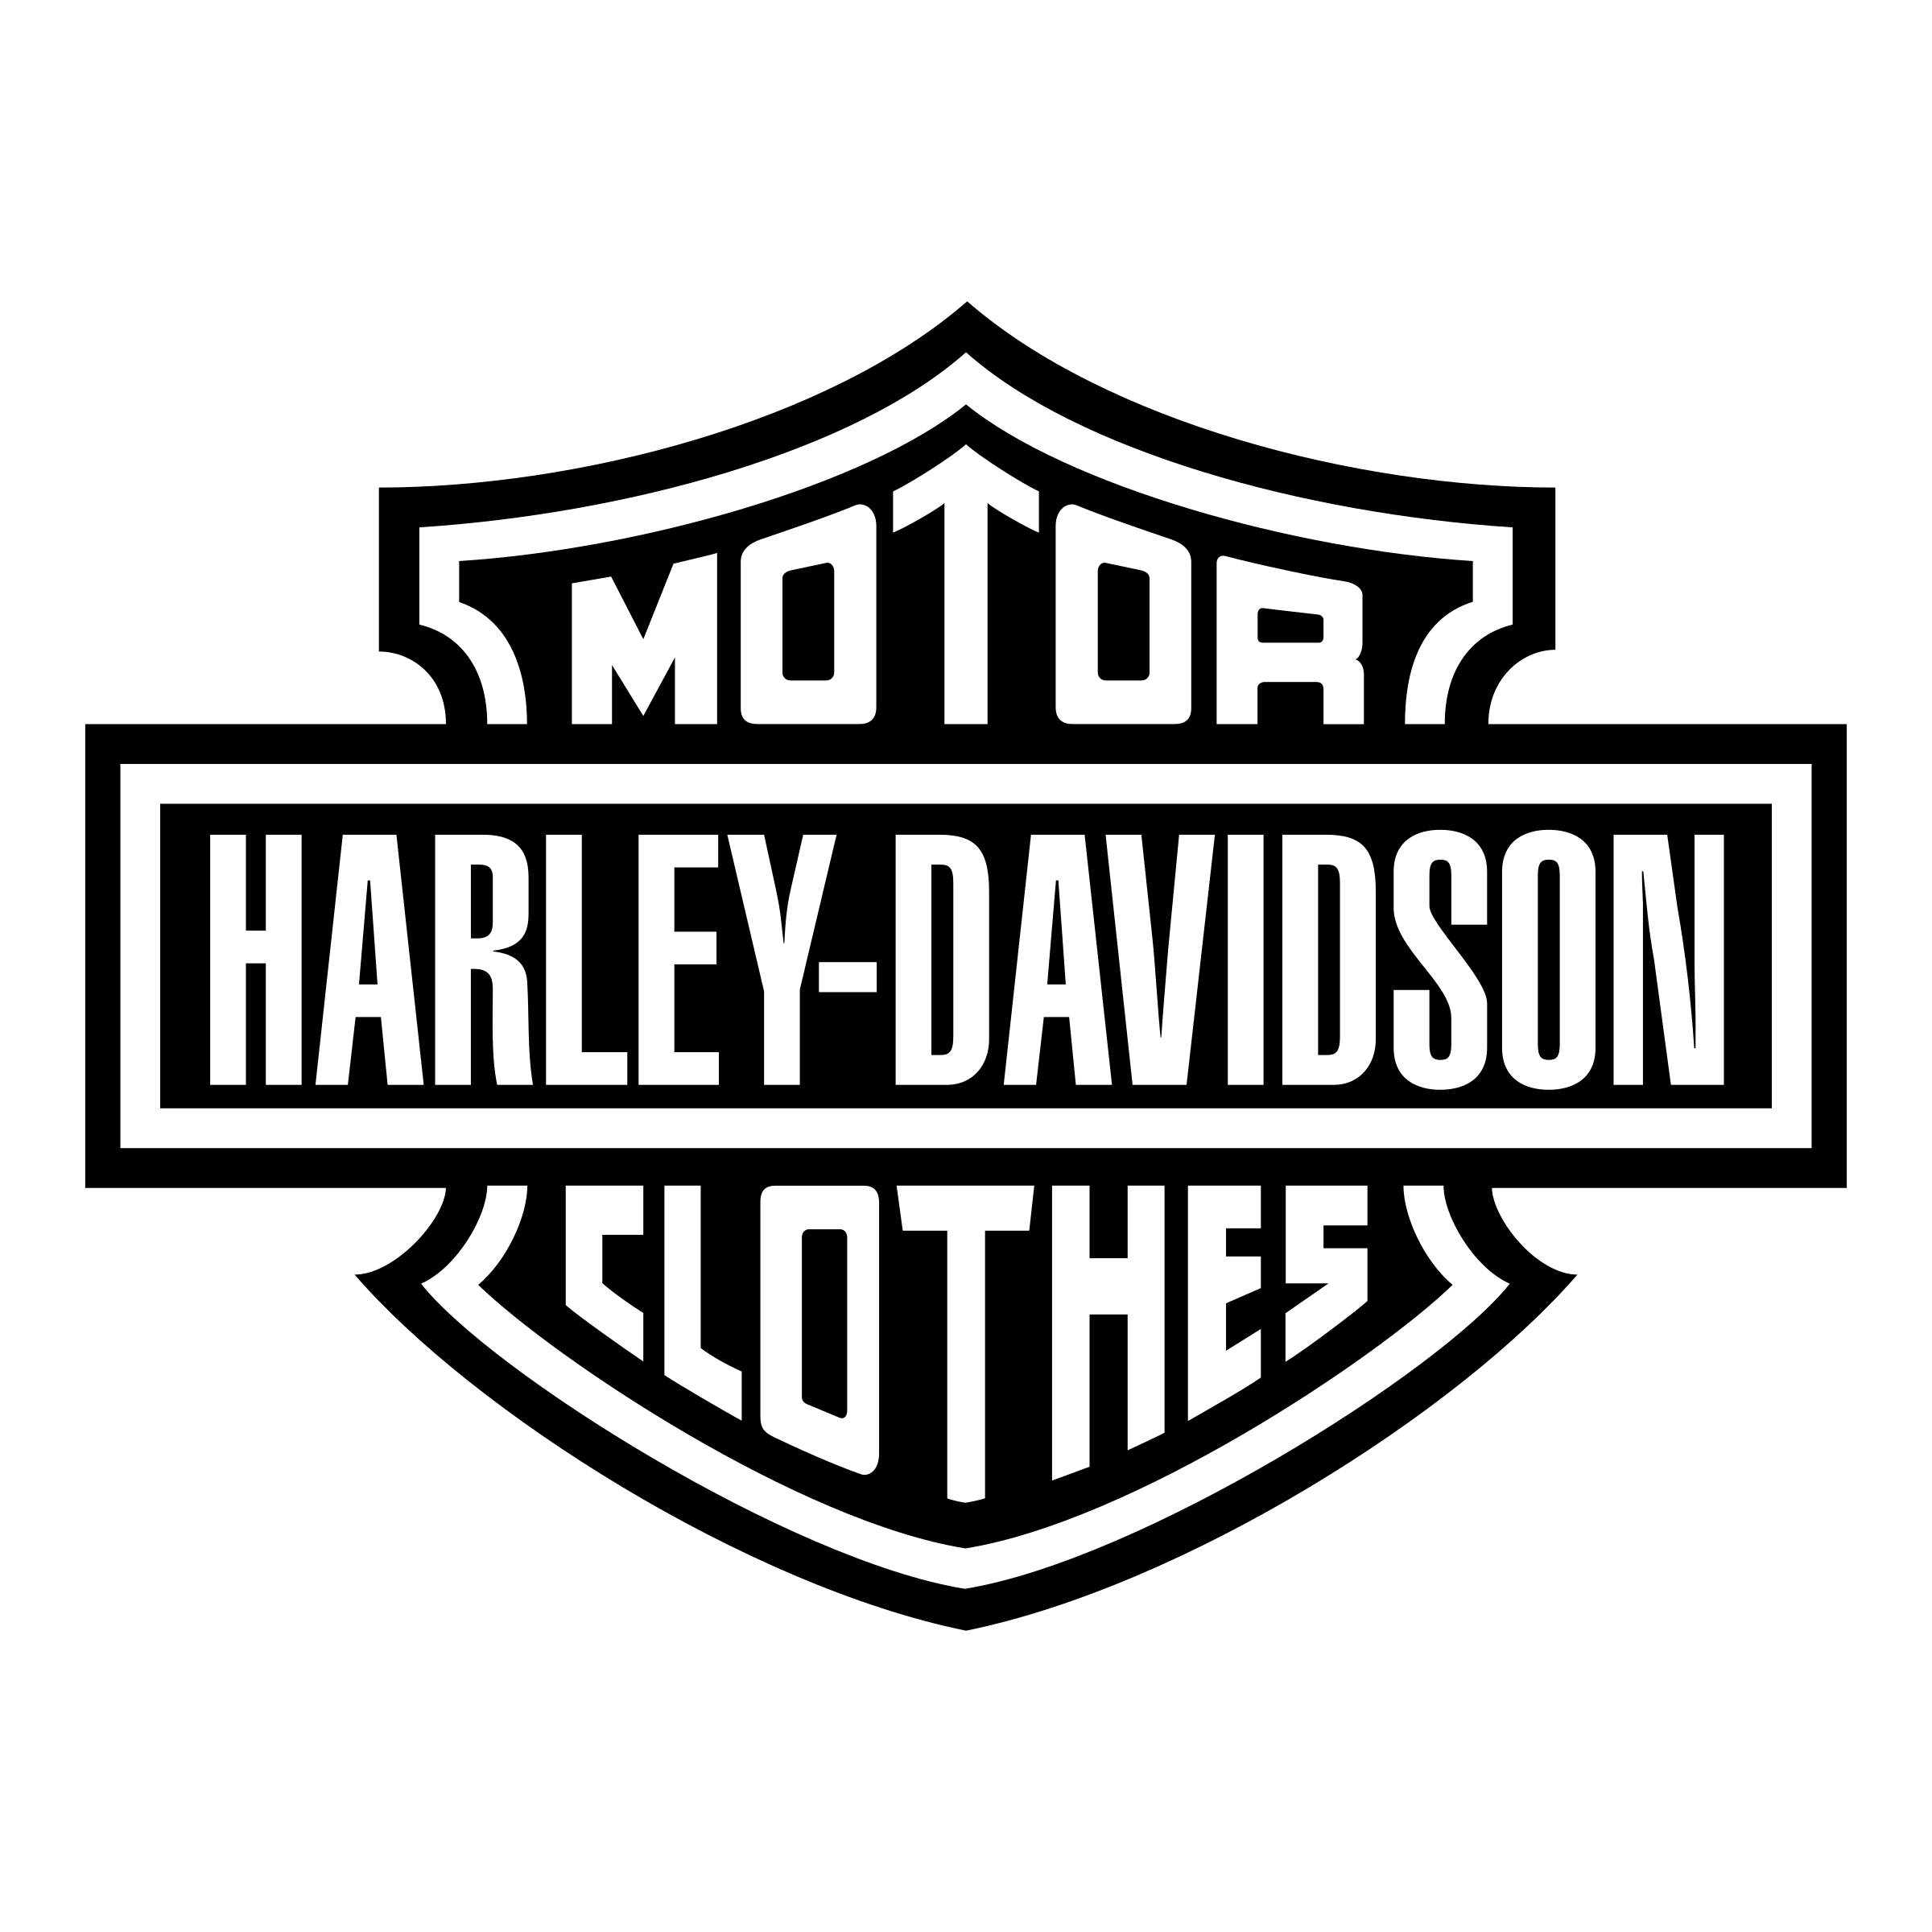 Harley-Davidson Logo Motorcycle - motorcycle png download - 2400*2400 ...